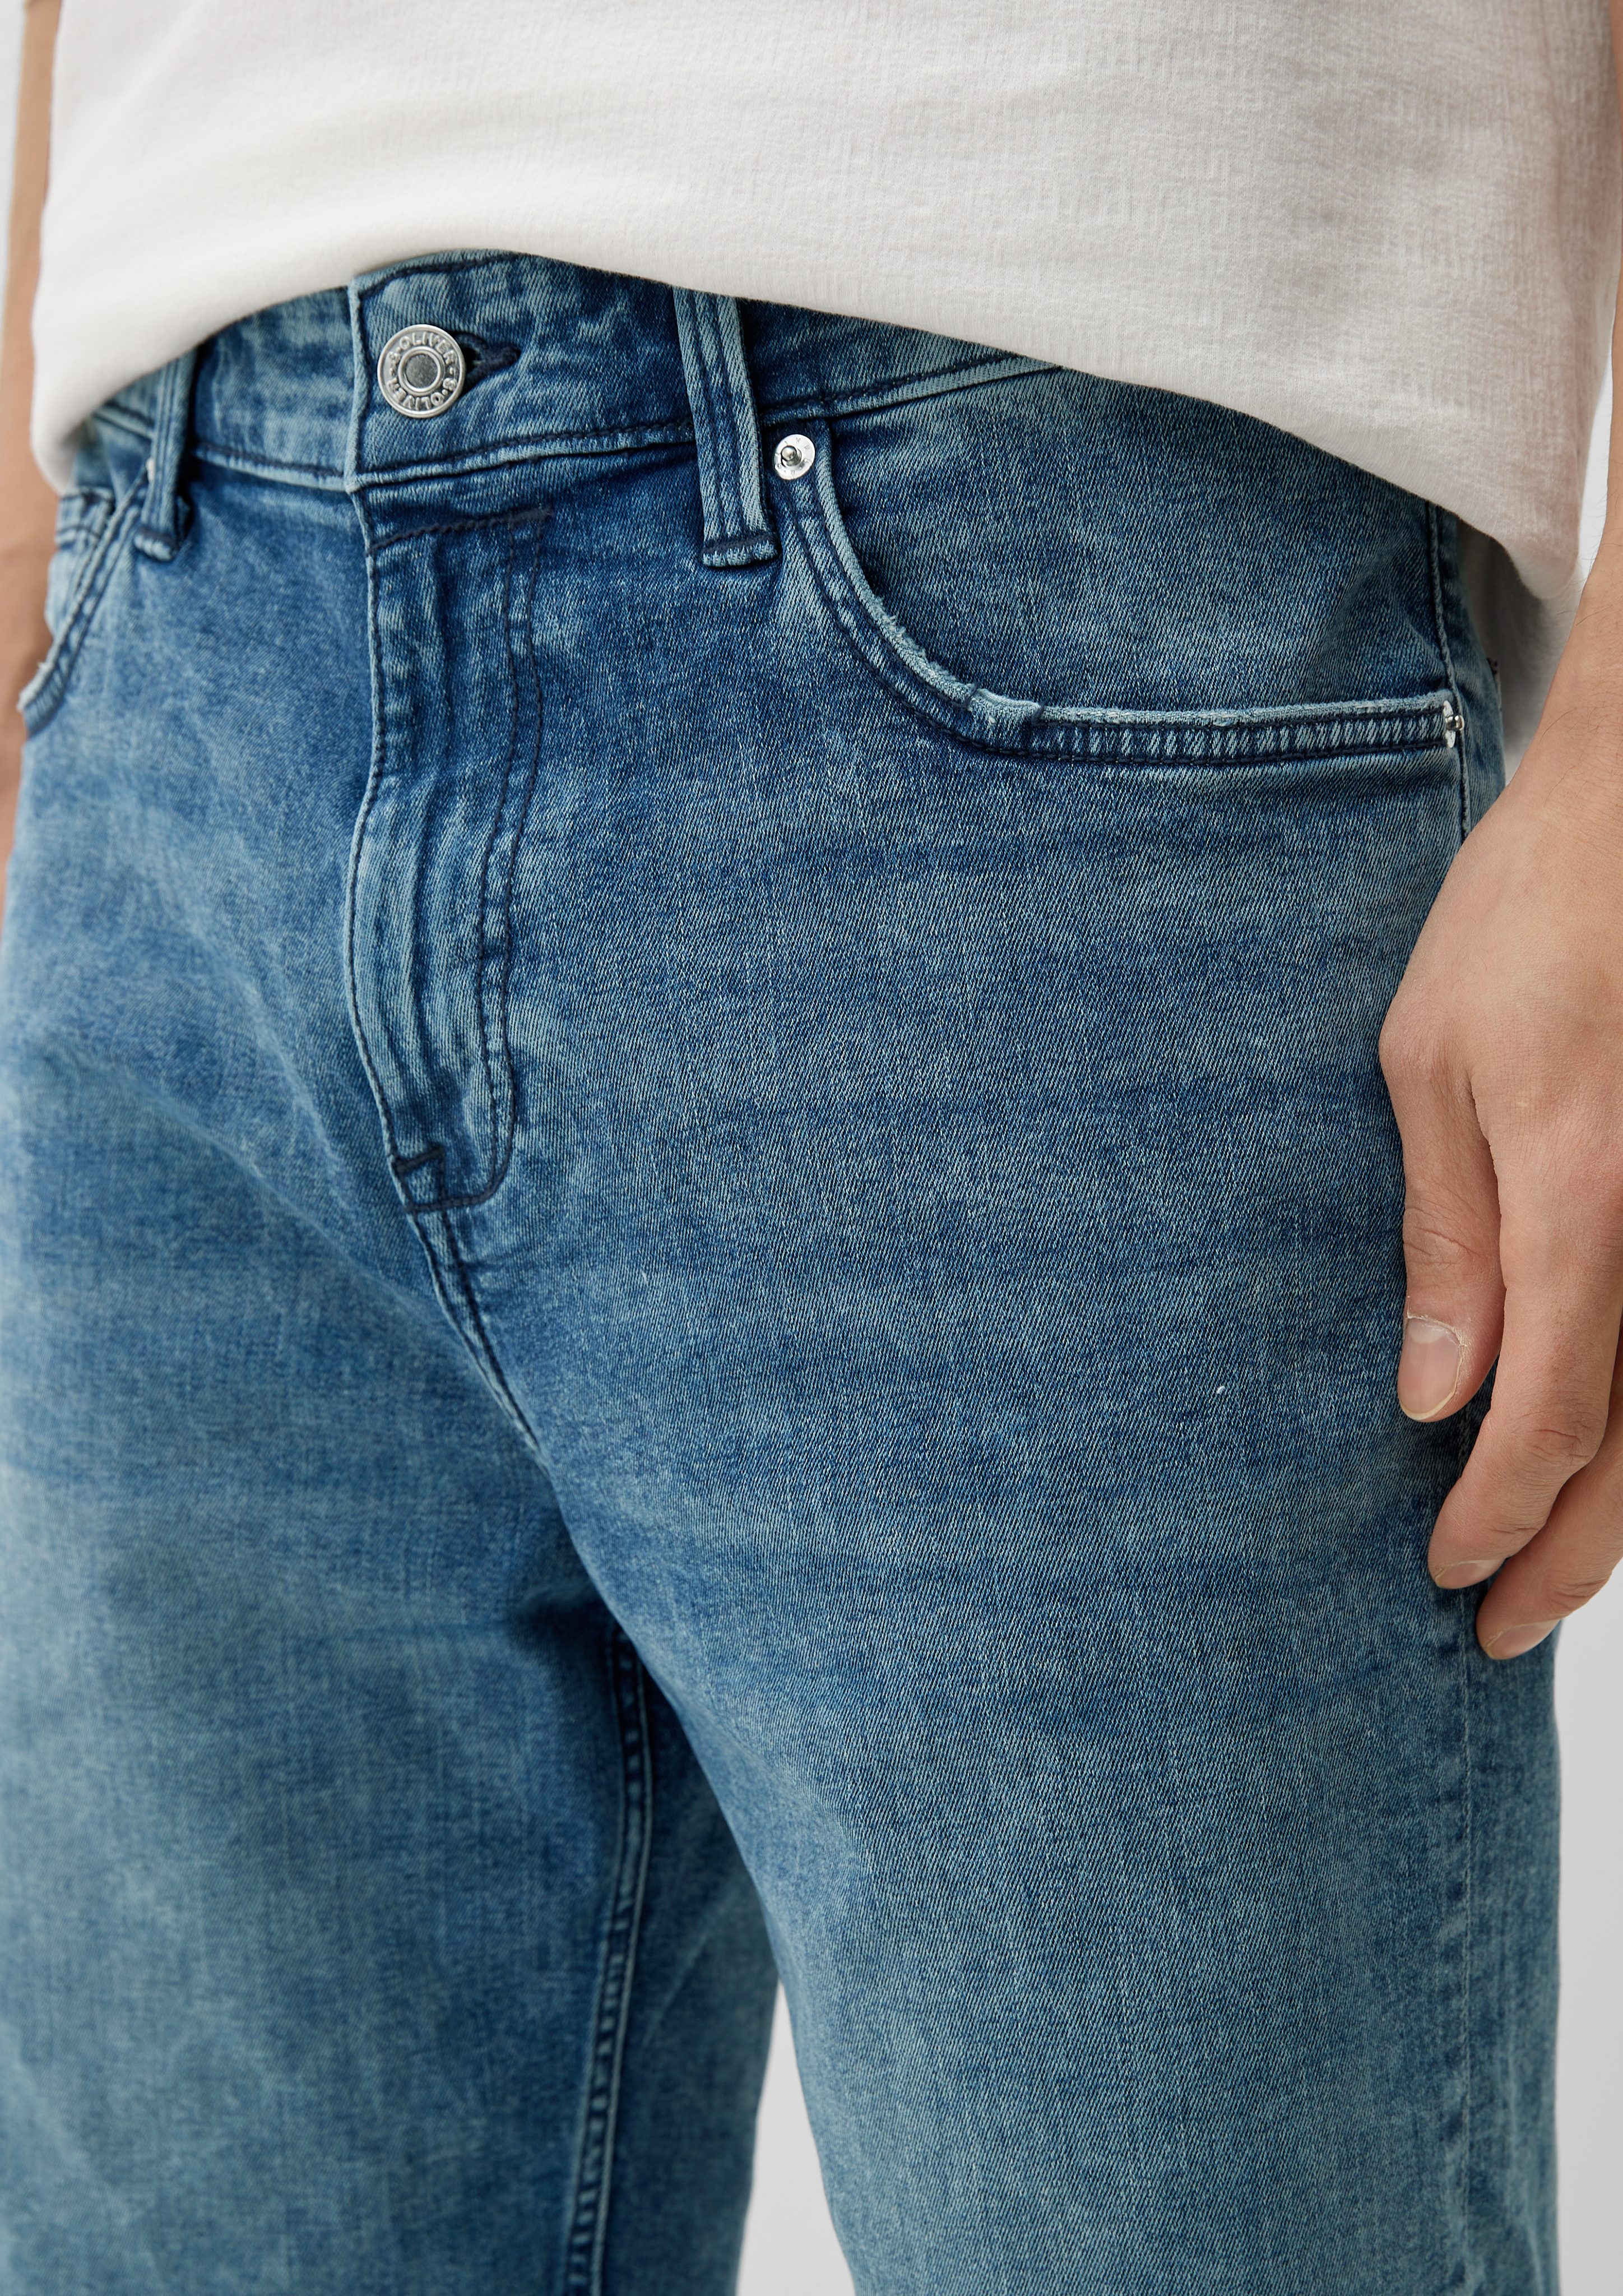 s.Oliver Jeansshorts Jeans / mit Reißverschluss, Keith im einen Straight Leg, 5-Pocket-Design Taschen Knopfverschluss, / Mid / Slim hat Rise Fit mit